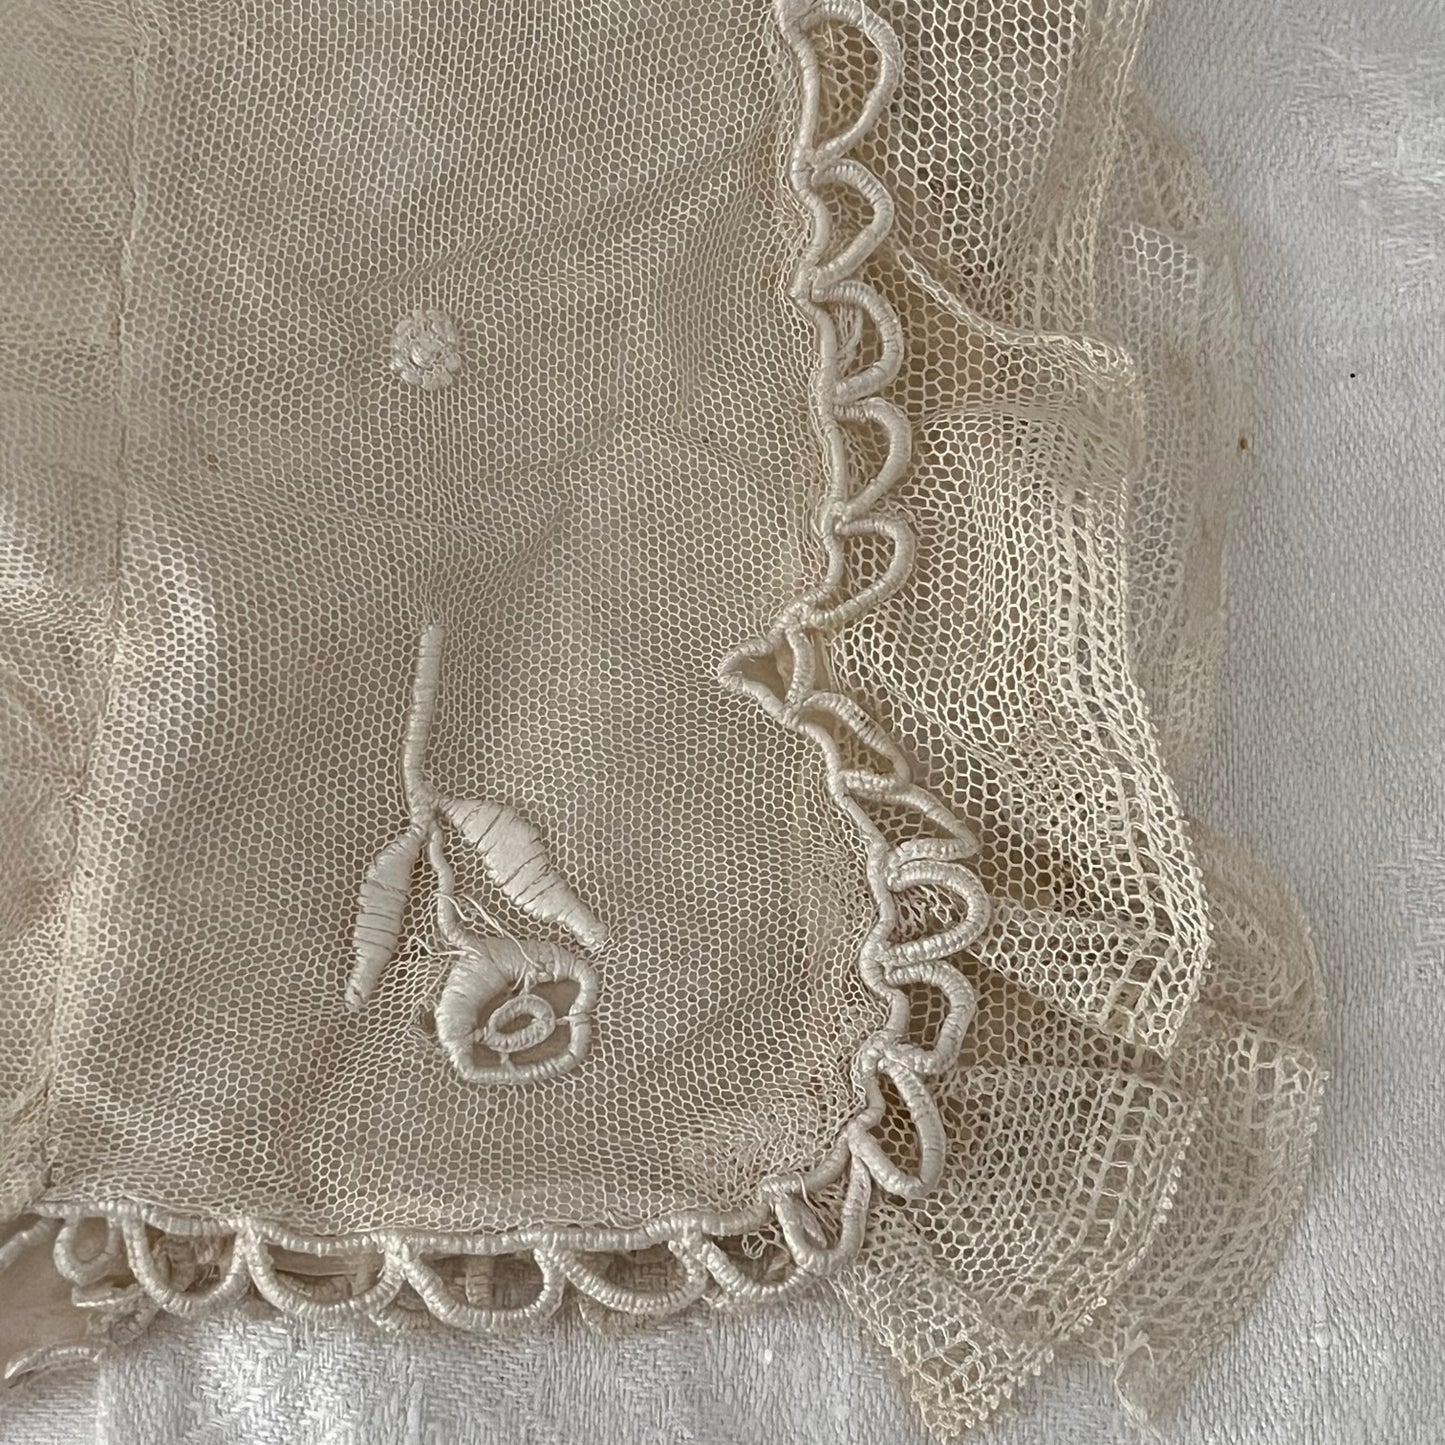 French Antique Lace Babies Bonnet